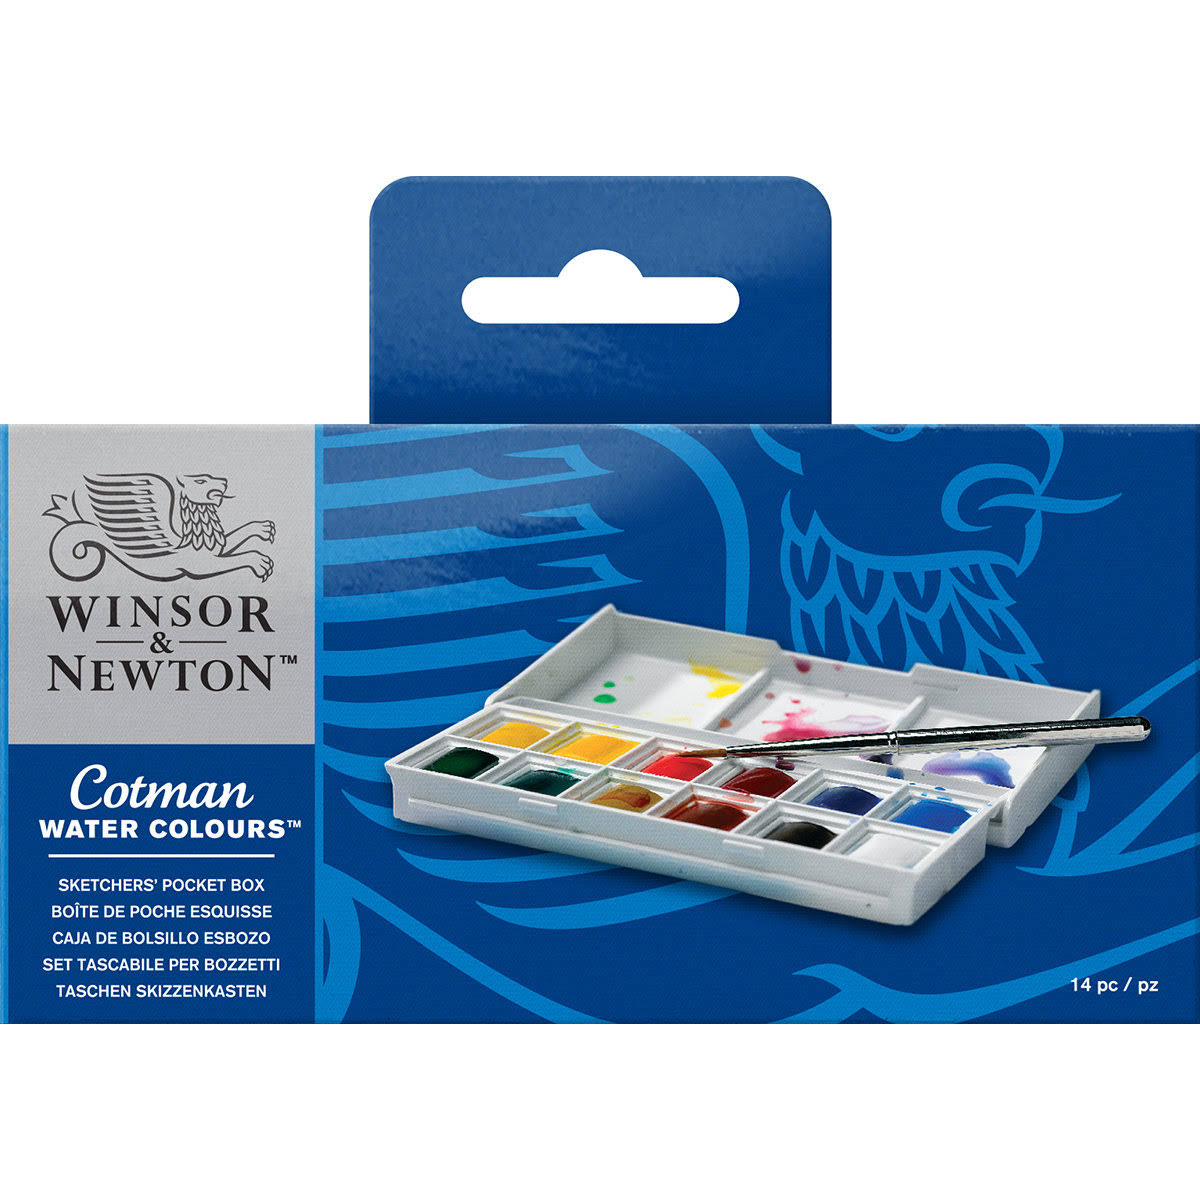 Winsor & Newton Cotman Water Colours Paint Set - x10